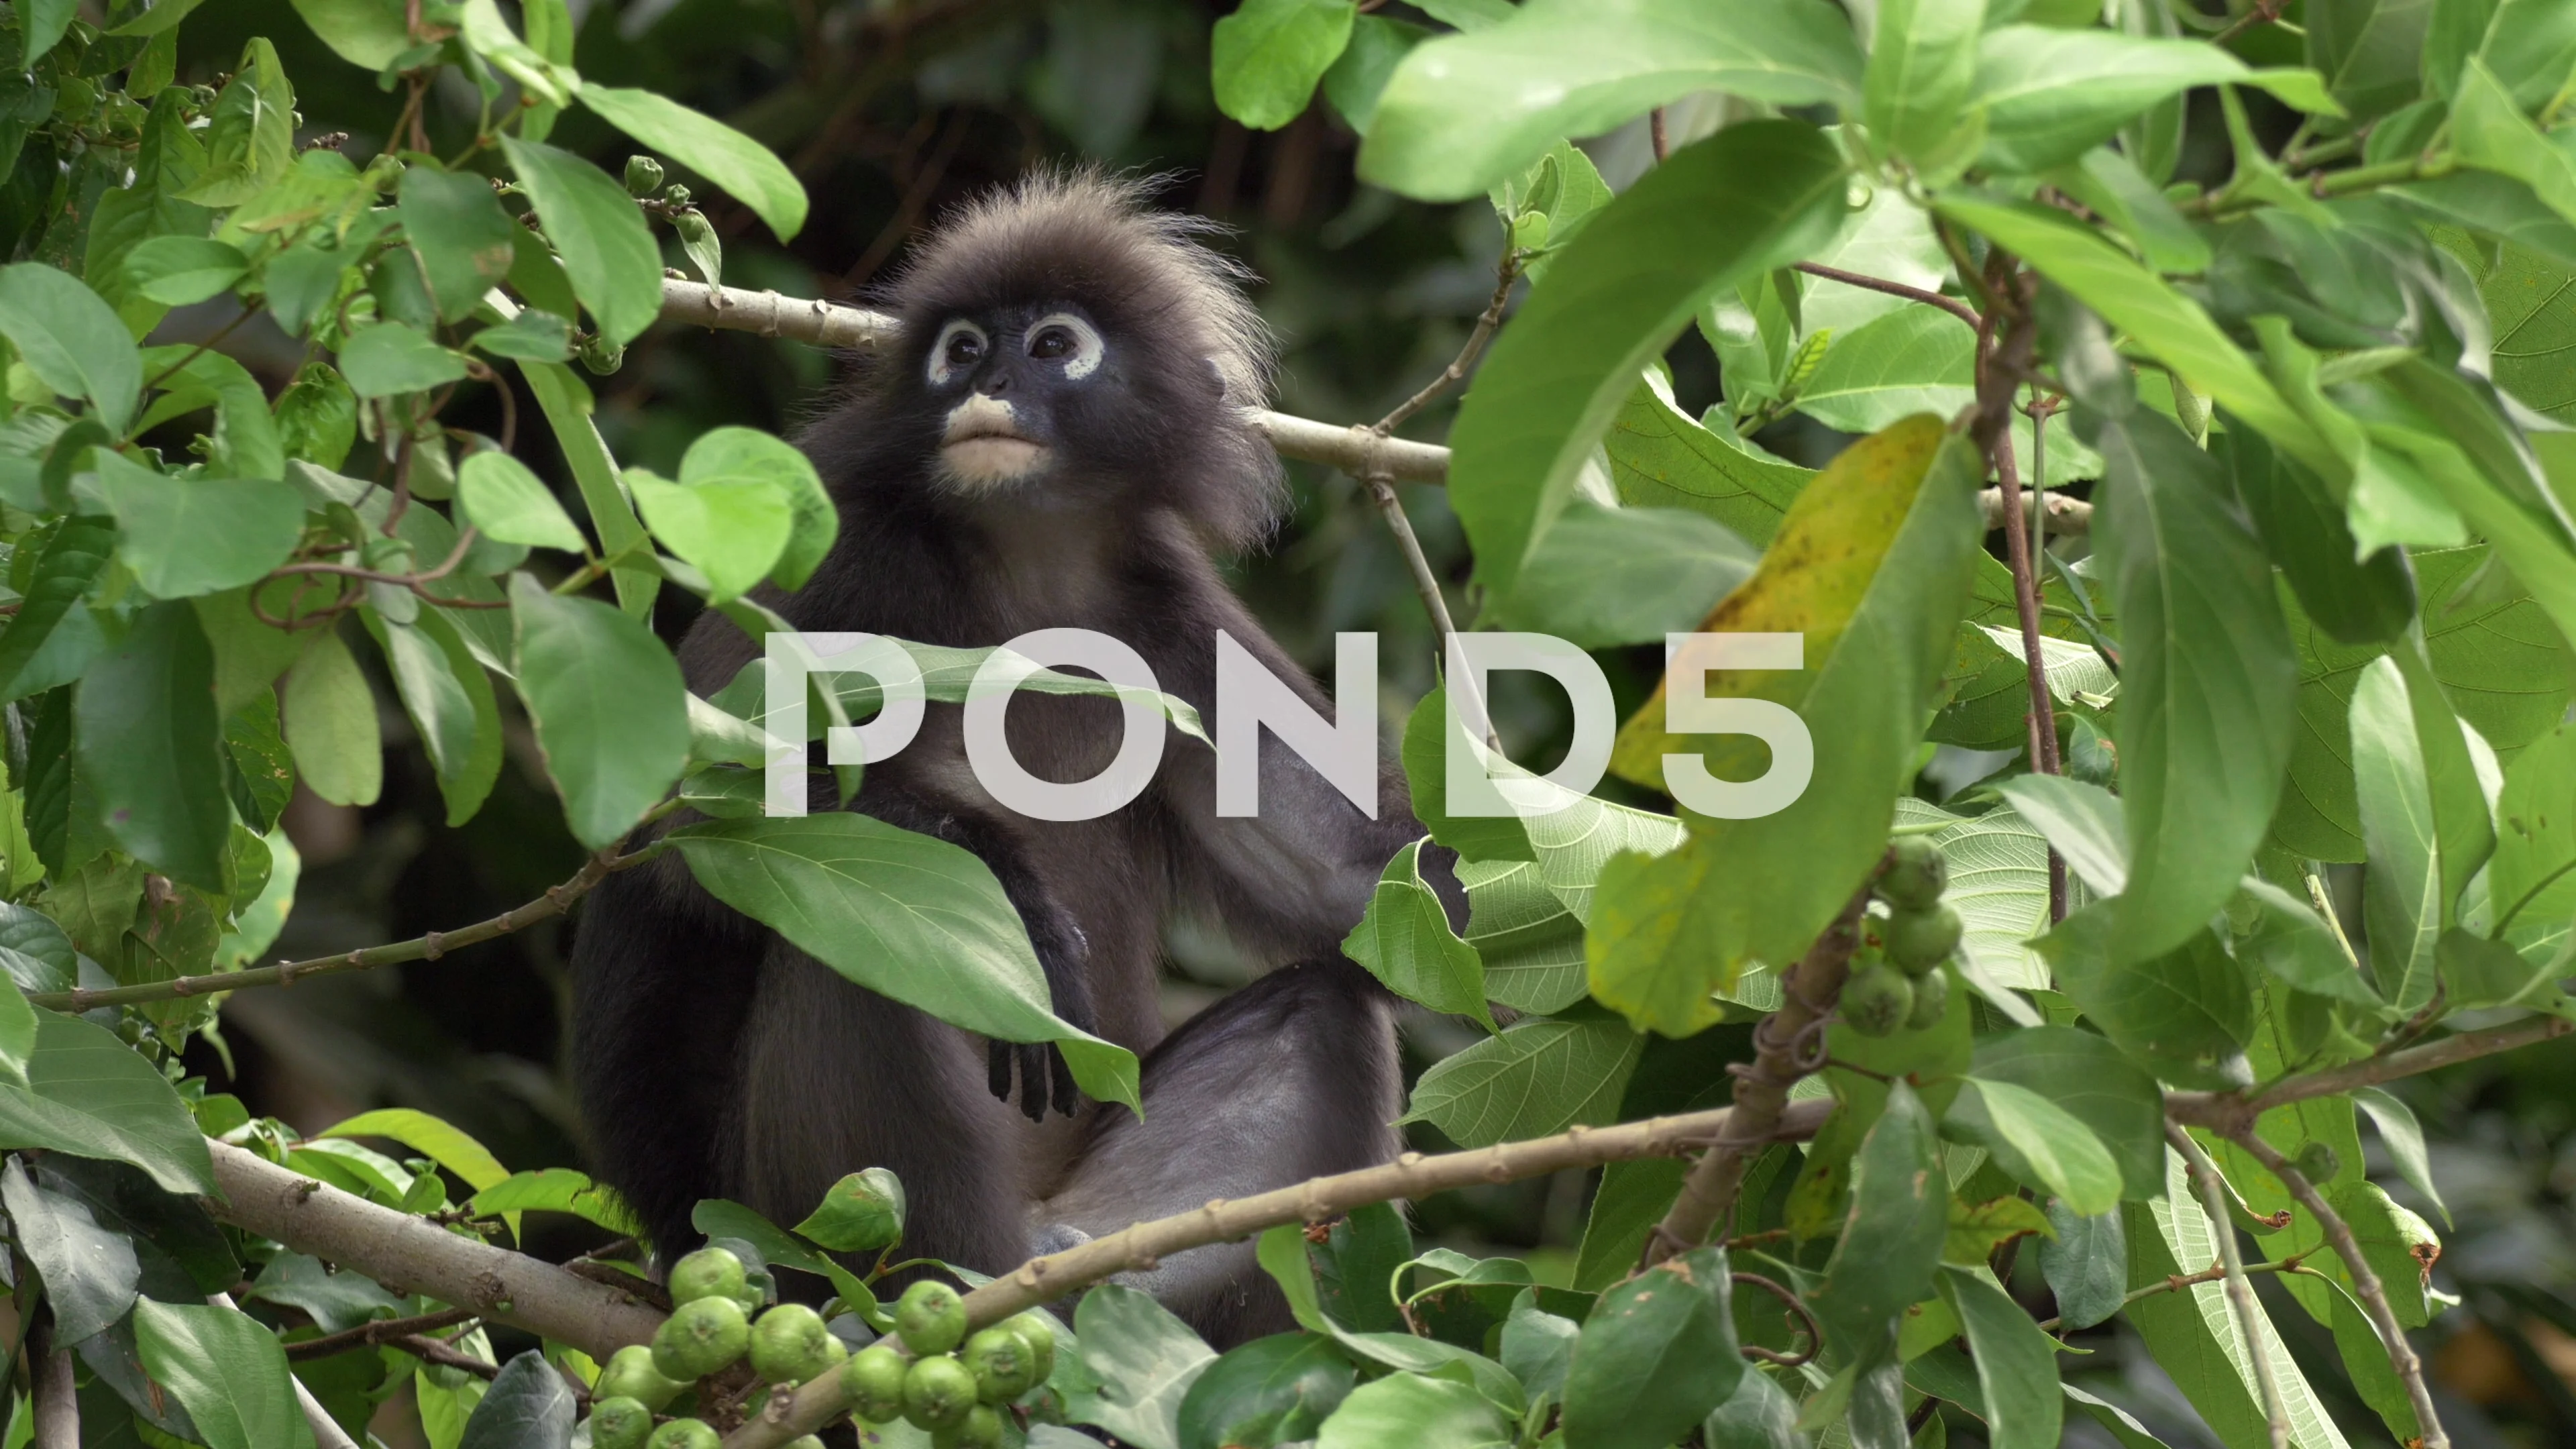 https://images.pond5.com/dusky-leaf-monkey-rainforest-tree-064313914_prevstill.jpeg